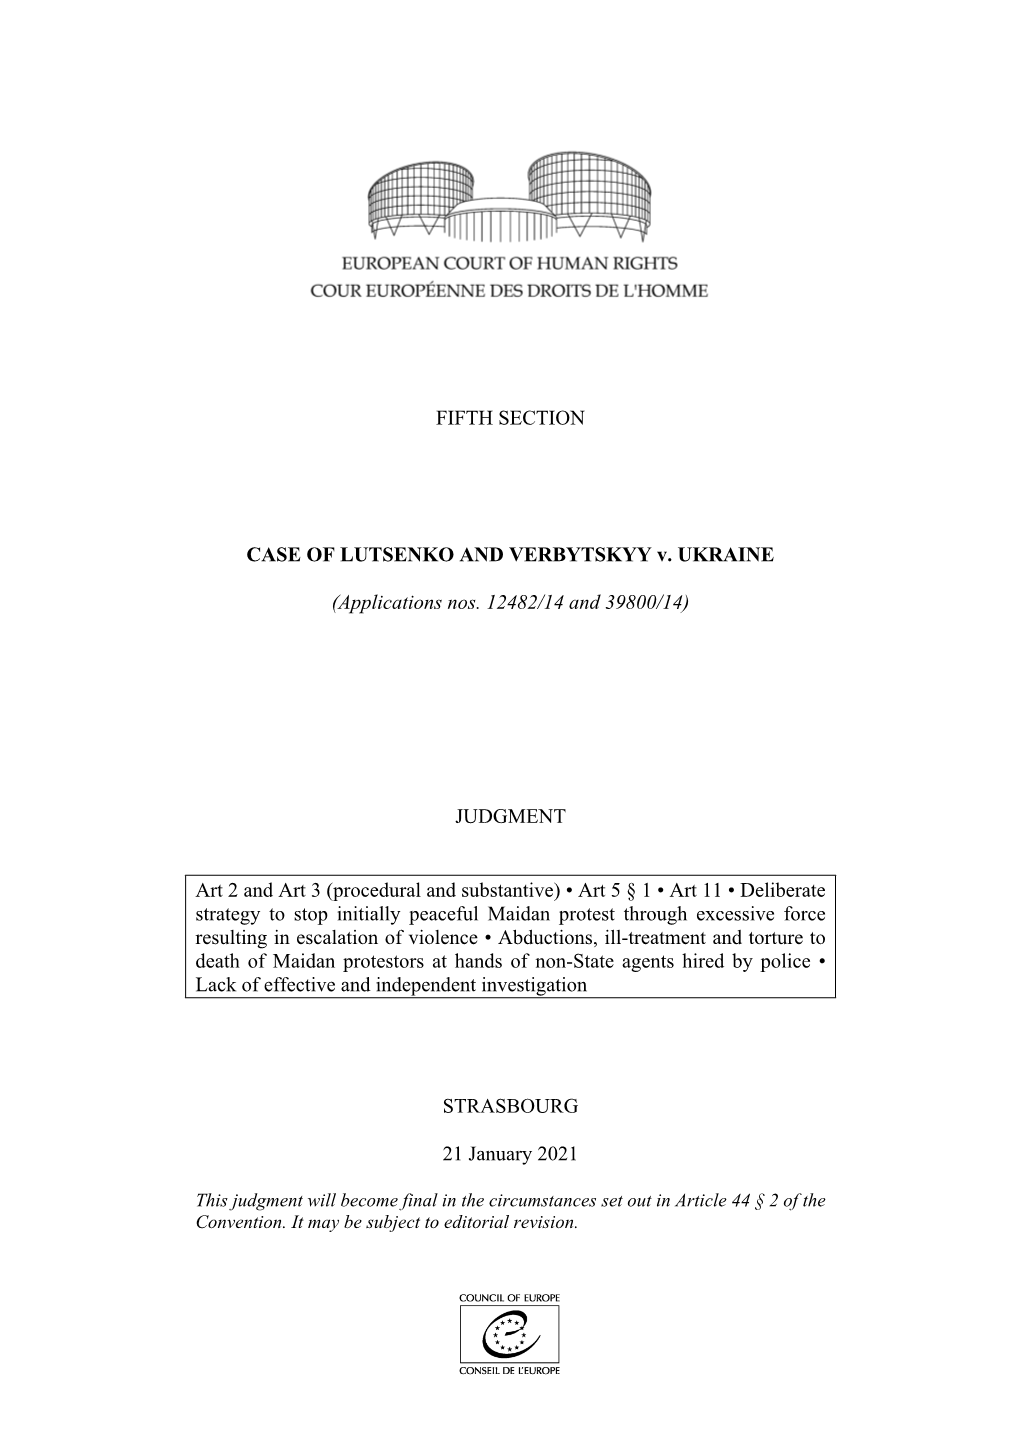 FIFTH SECTION CASE of LUTSENKO and VERBYTSKYY V. UKRAINE